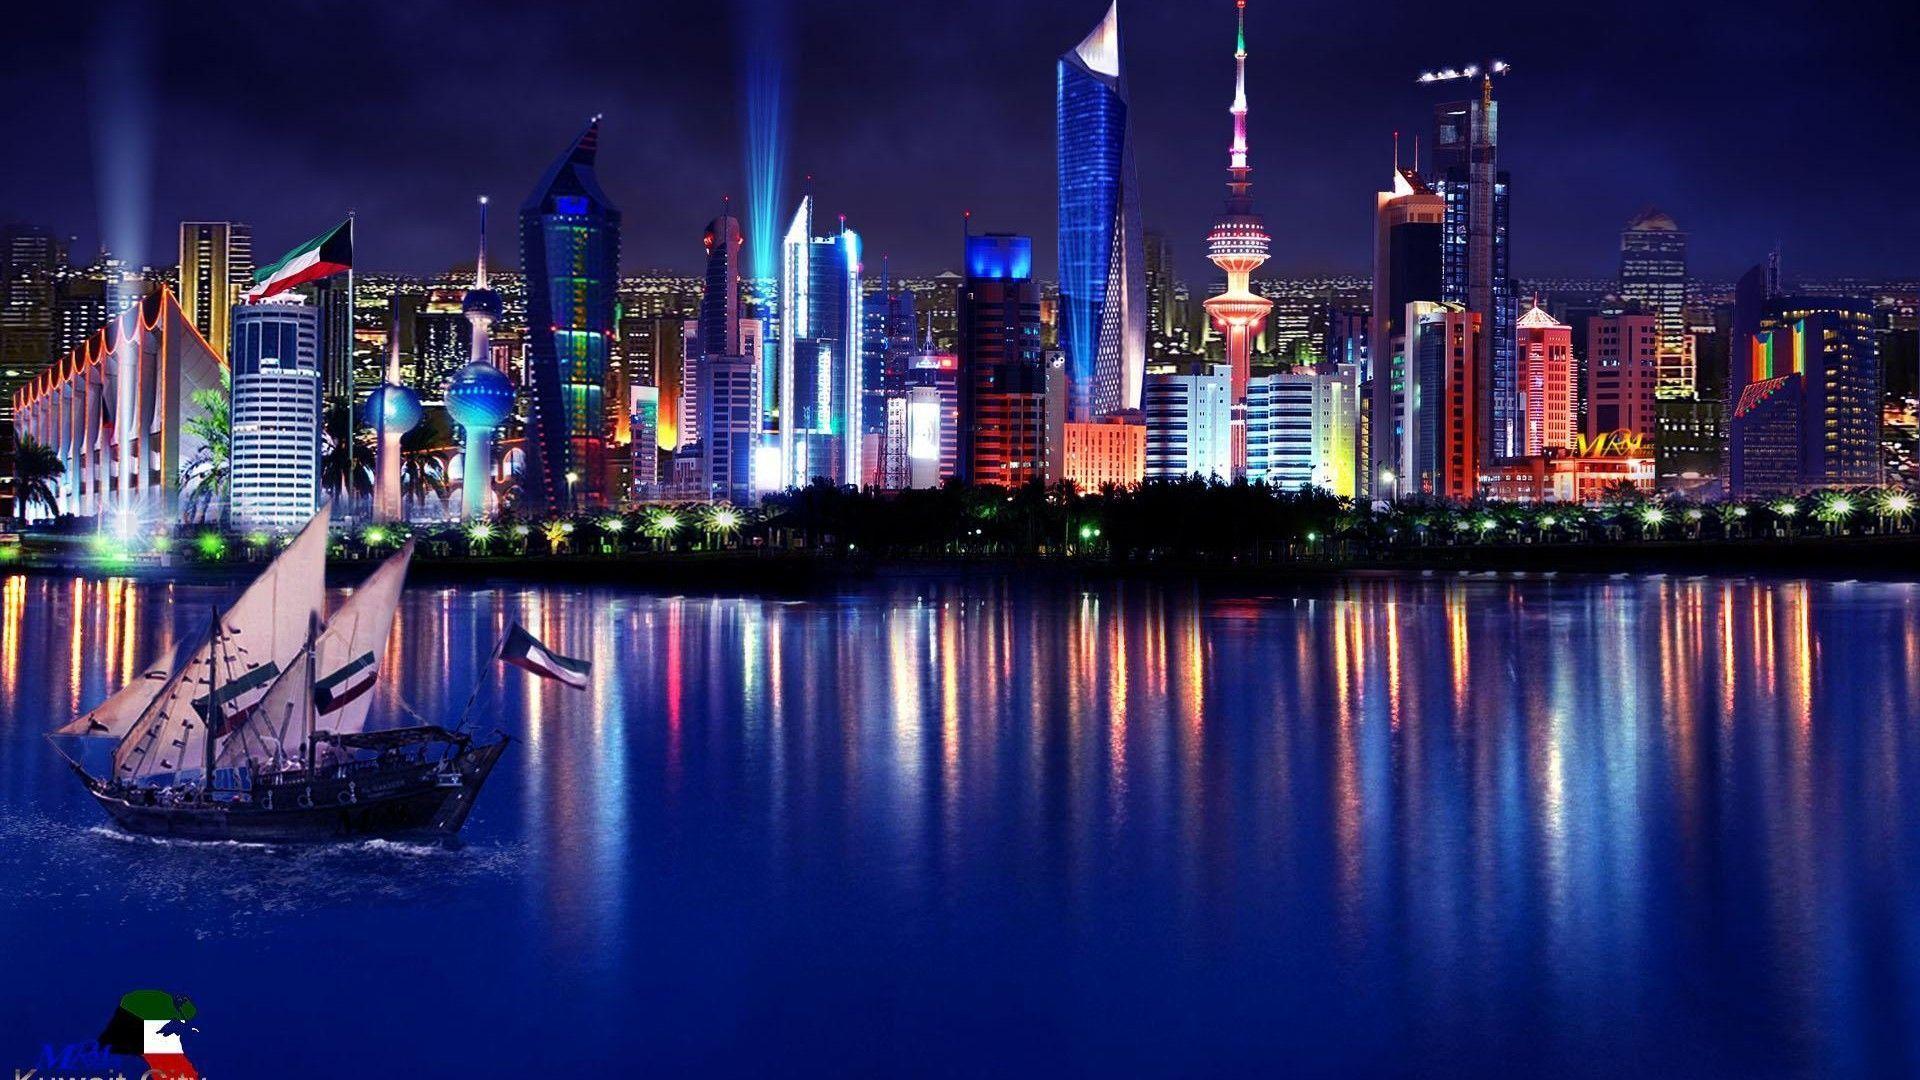 Kuwait City Night 2K desk 4K wallpapers Widescreen High